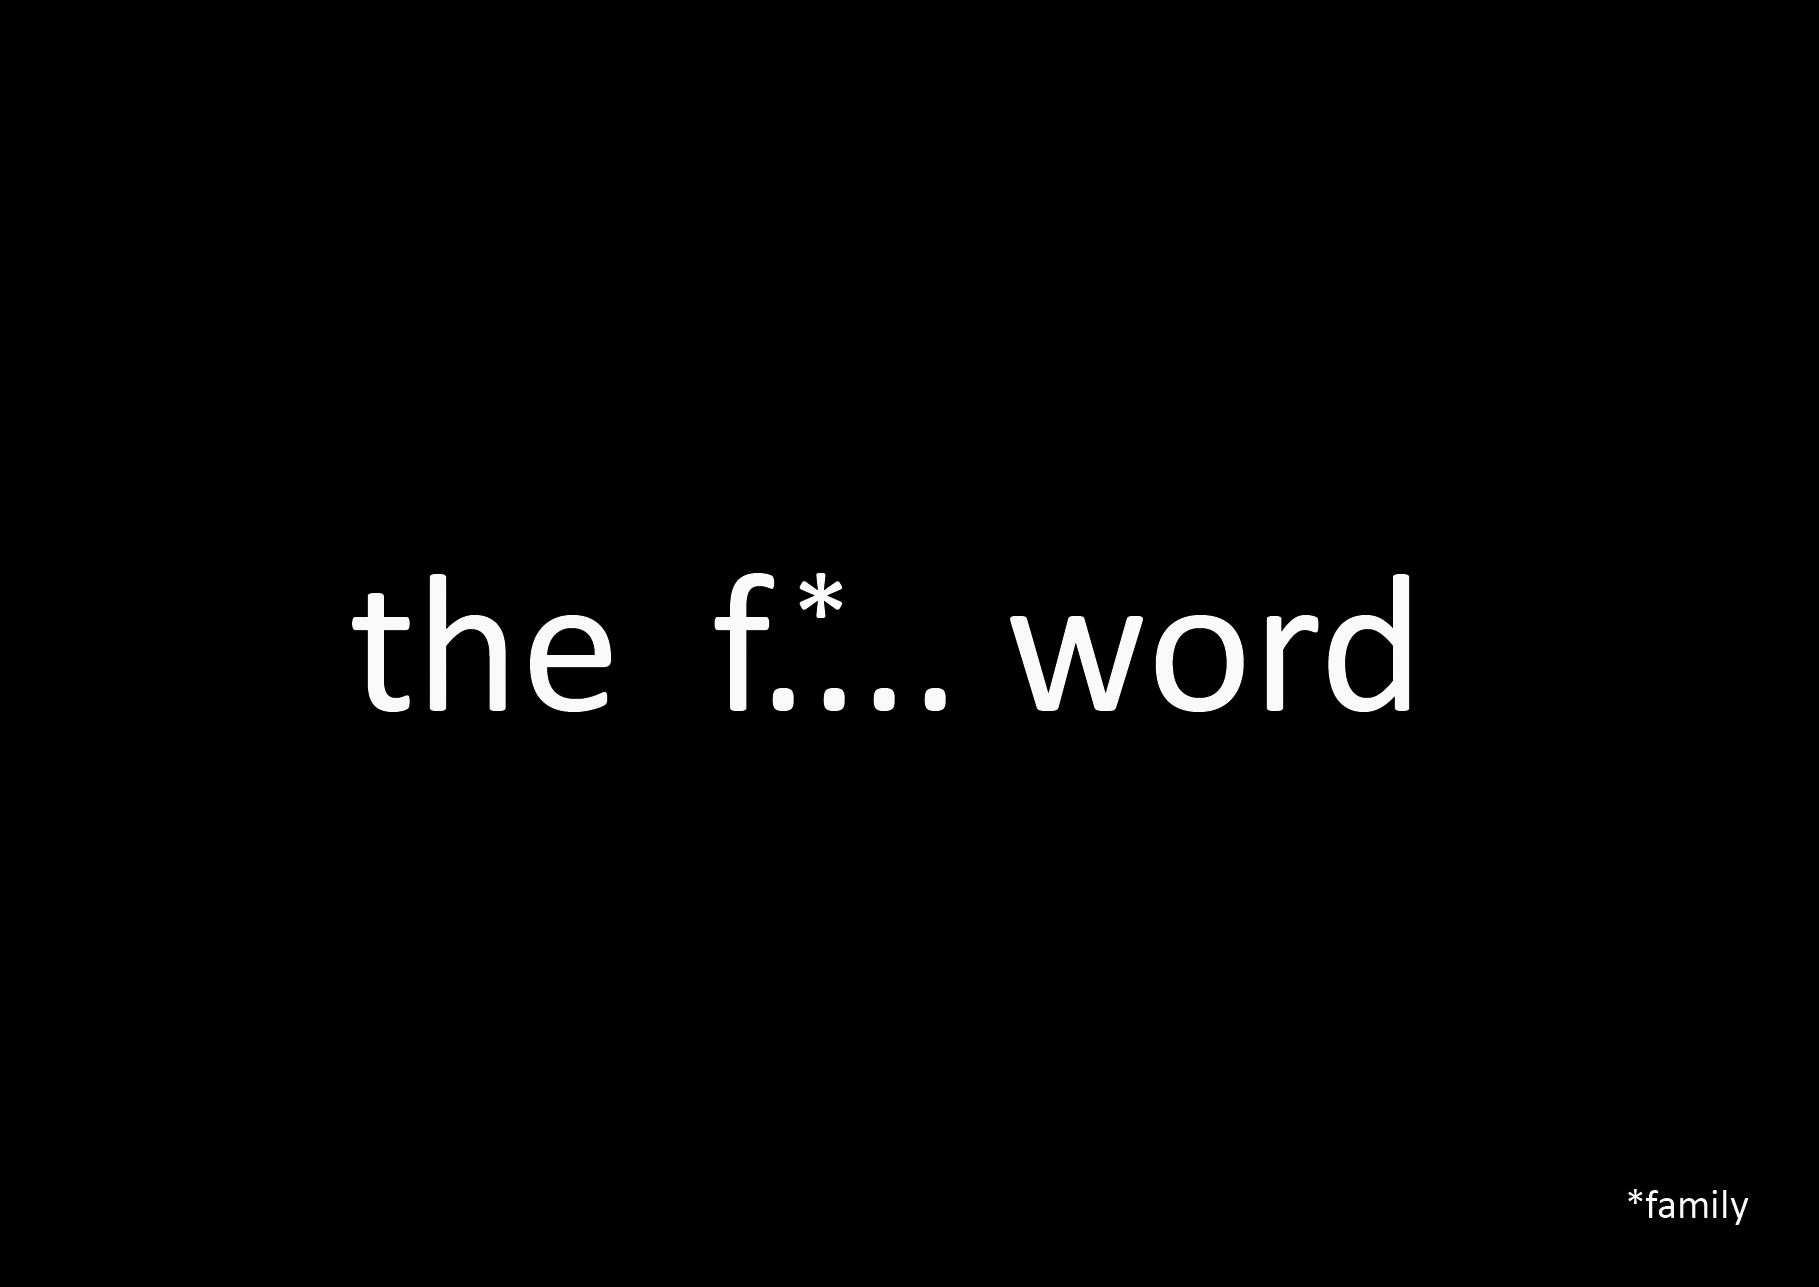 the f*....word, mars 2011 édité par carted